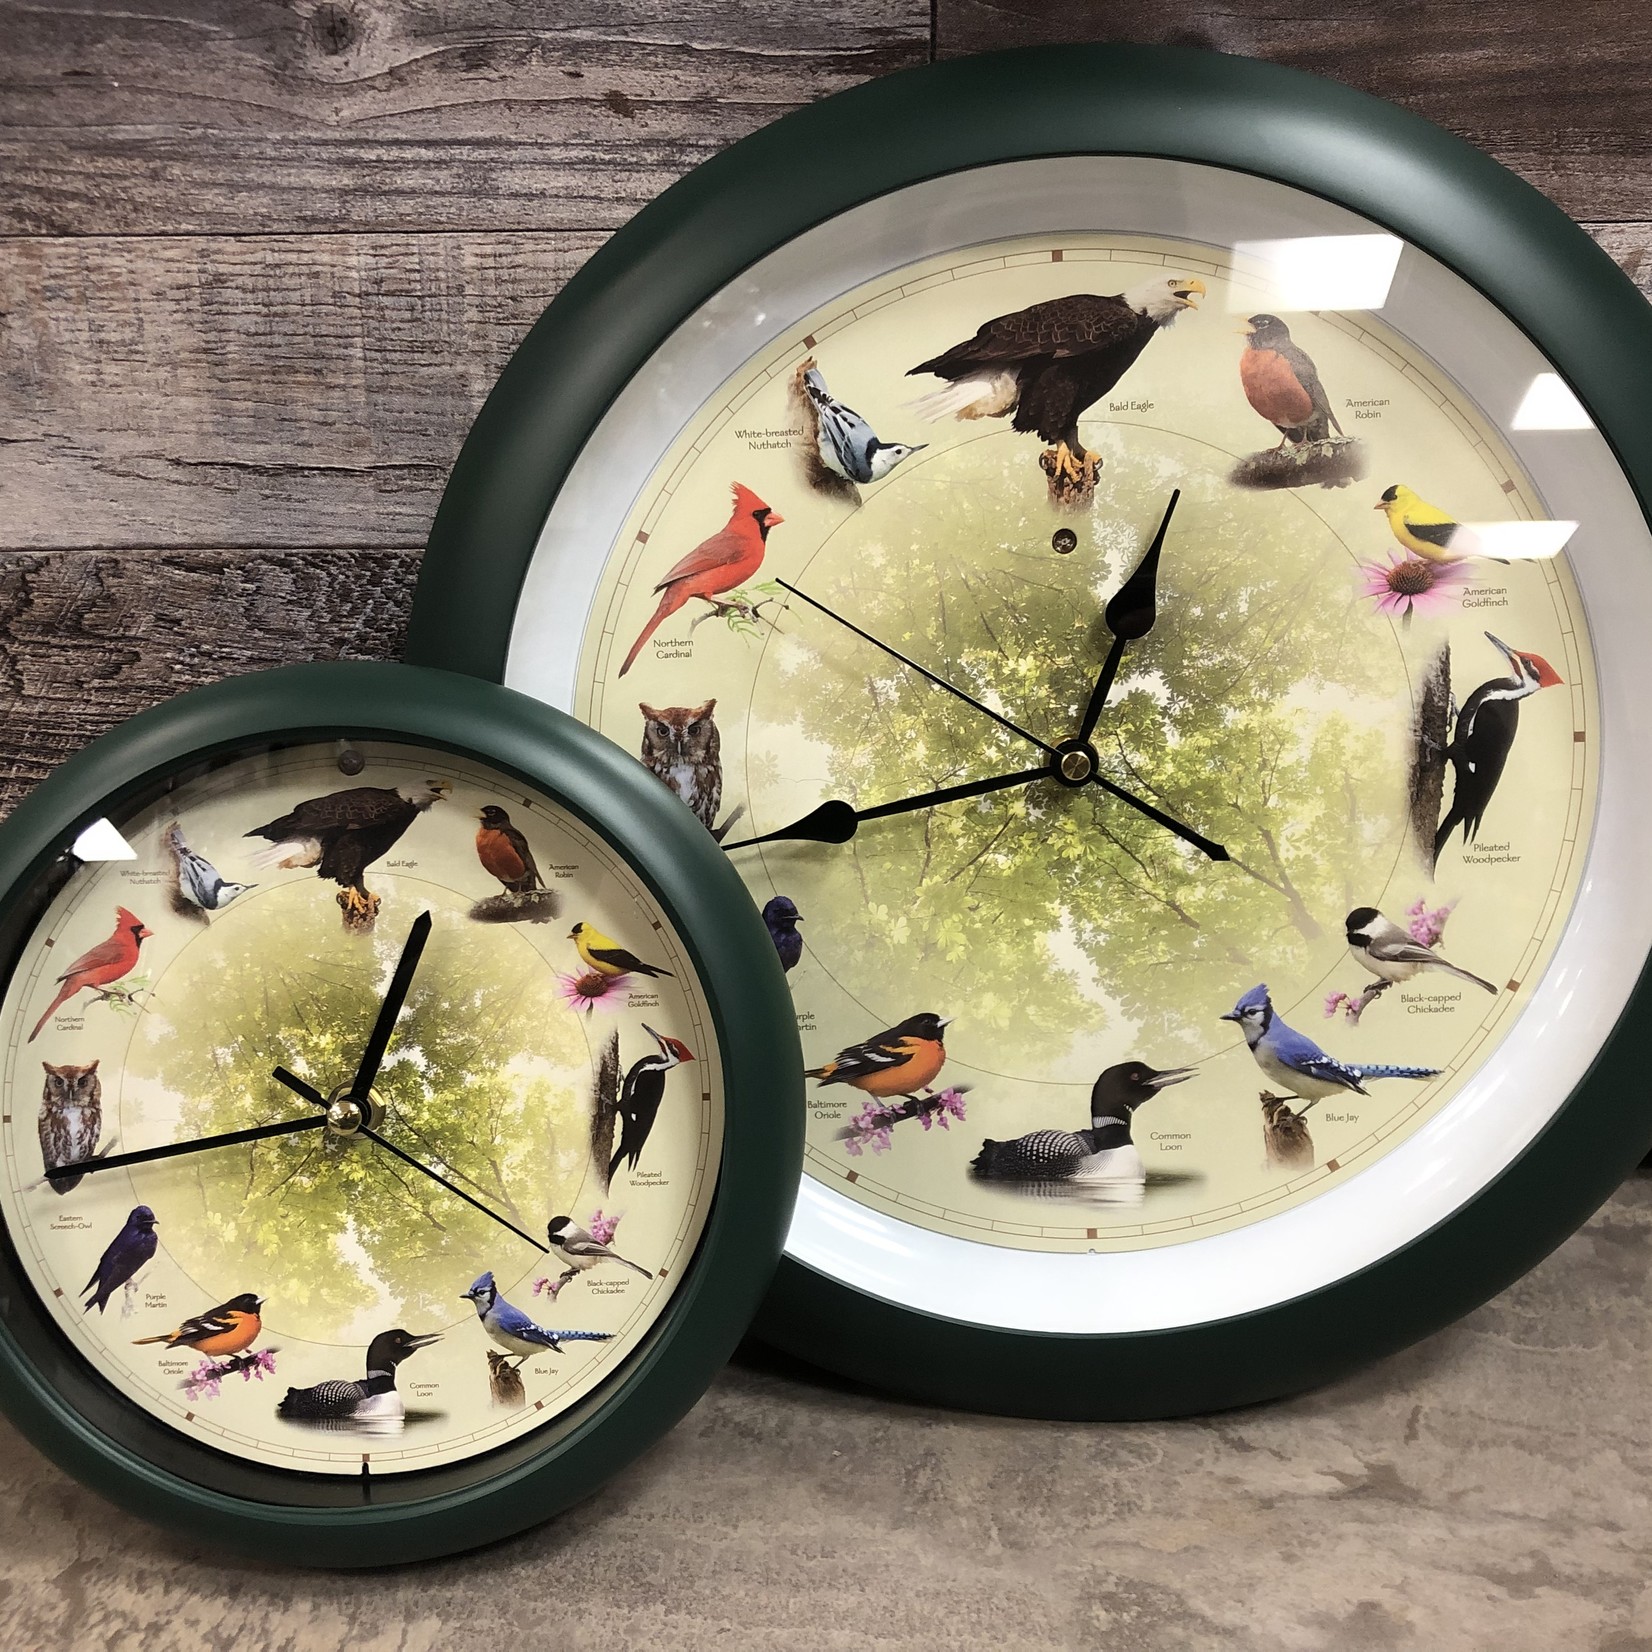 Singing Bird Clocks